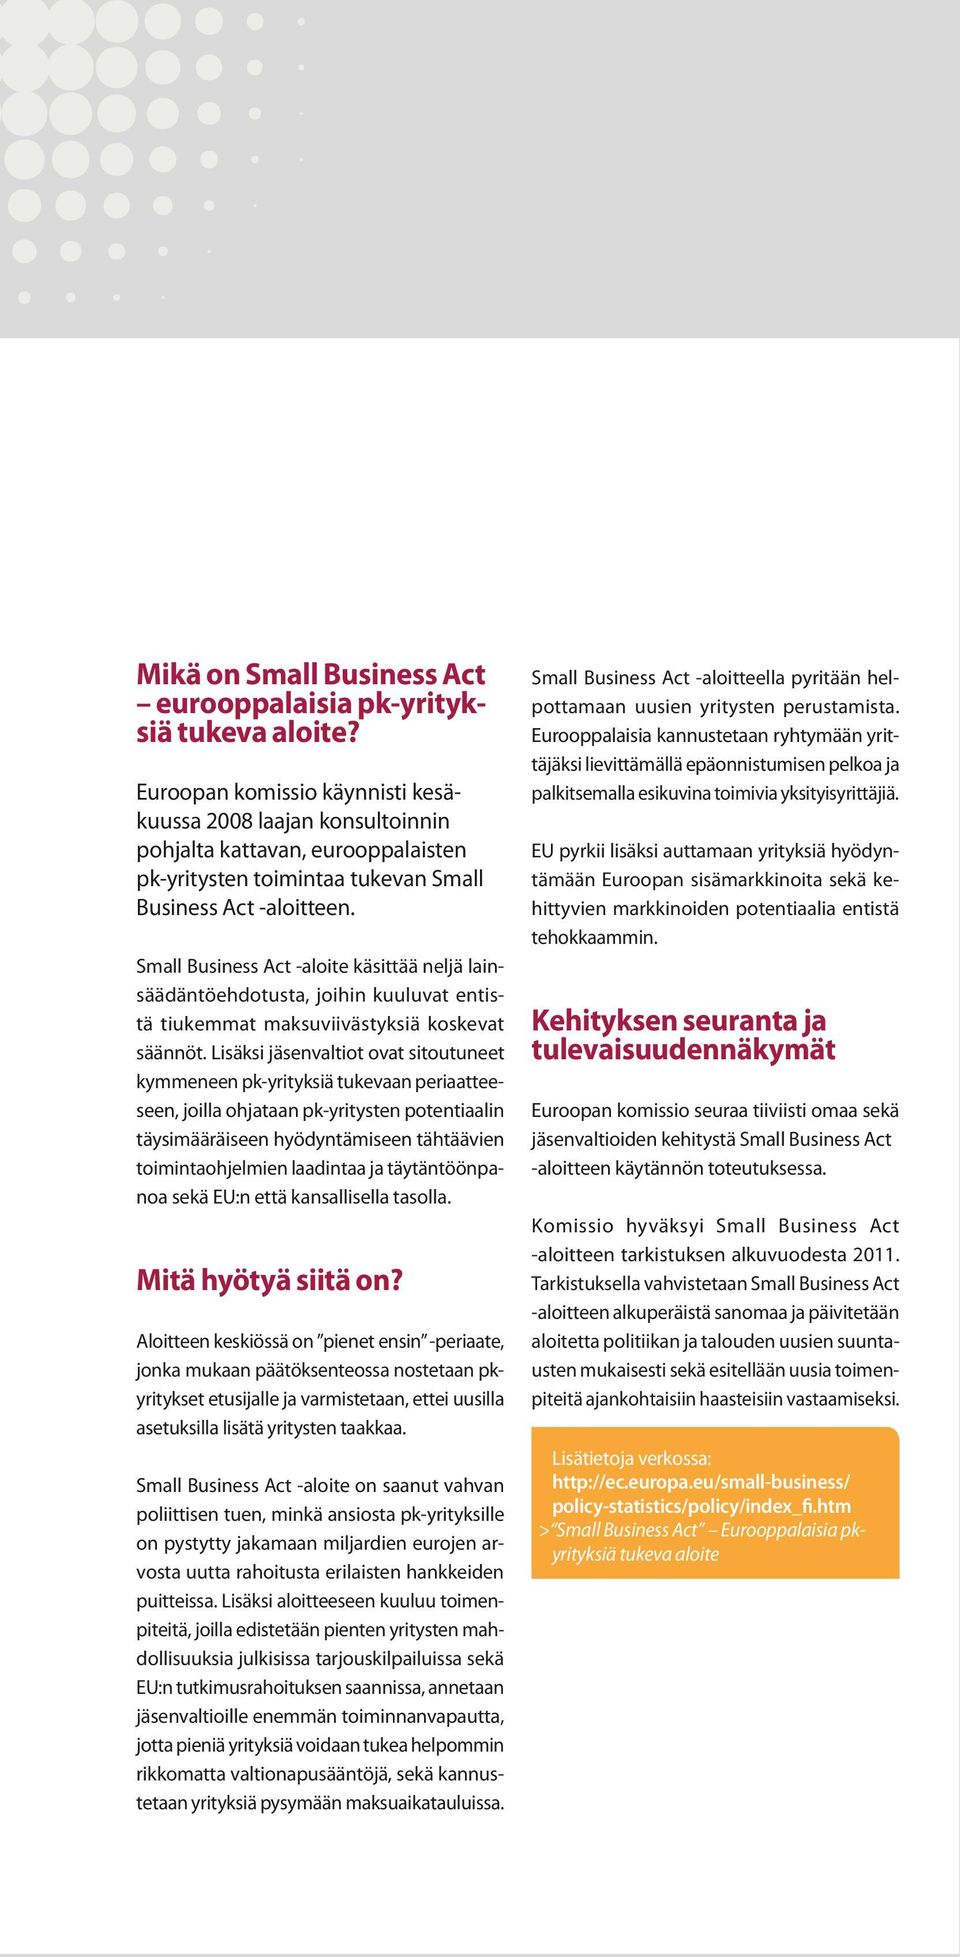 Small Business Act -aloite käsittää neljä lainsäädäntöehdotusta, joihin kuuluvat entistä tiukemmat maksuviivästyksiä koskevat säännöt.